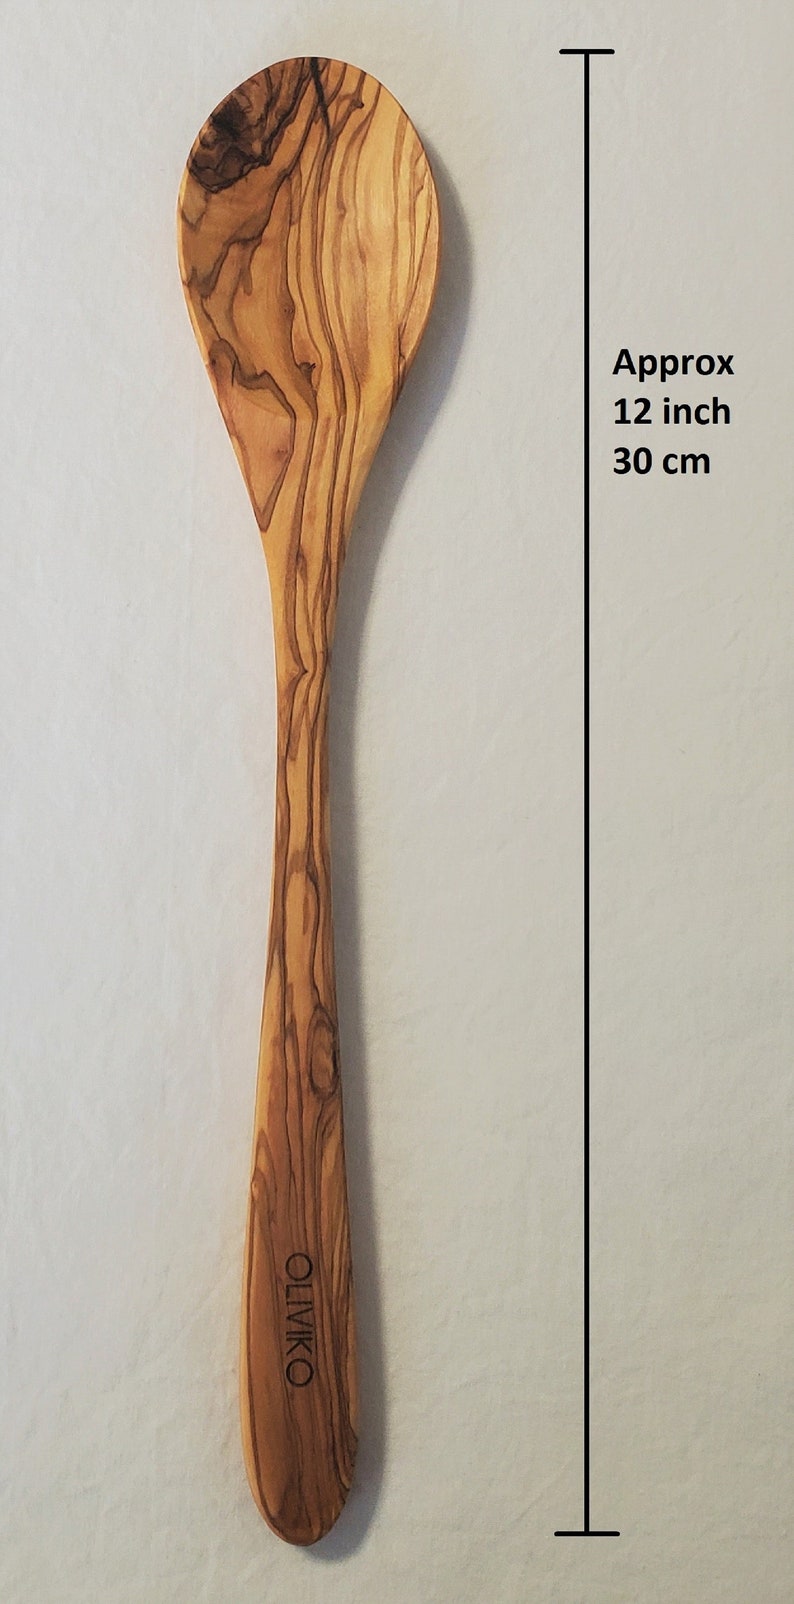 OLIVIKO Handmade Olive Wood Utensils Kit of 5 Utensils 2 Spatula 3 Spoon 100% Olive Wood image 6